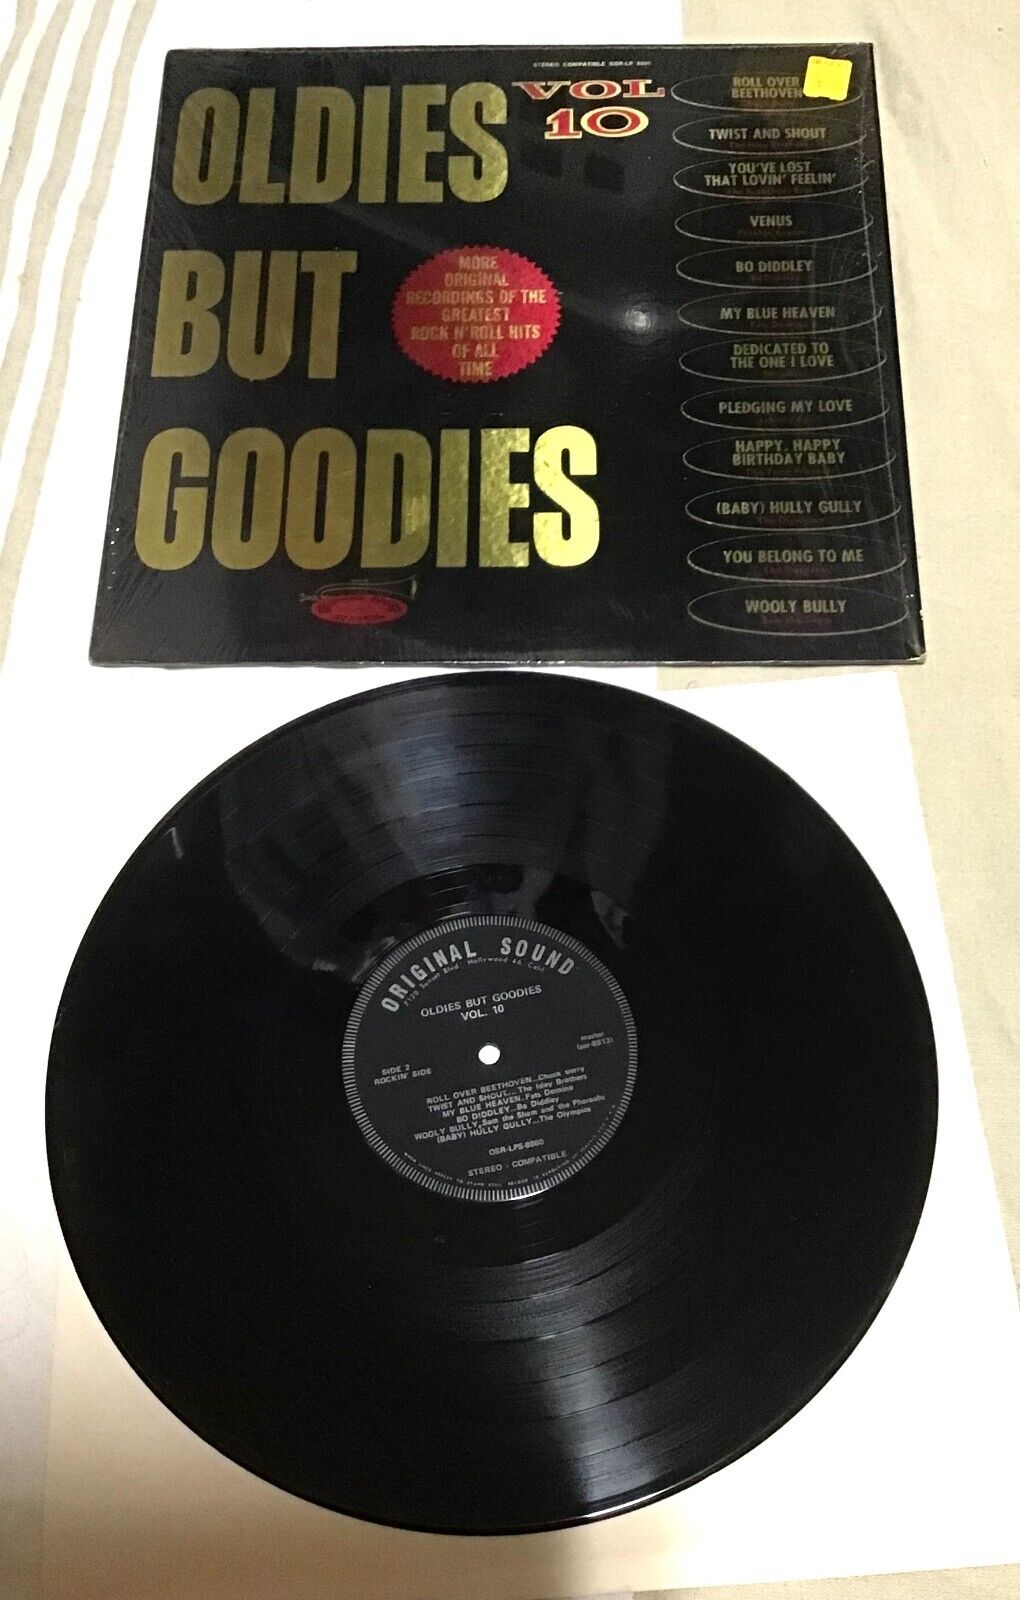 Vintage Vinyl LP Record Oldies But Goodies Vol 10